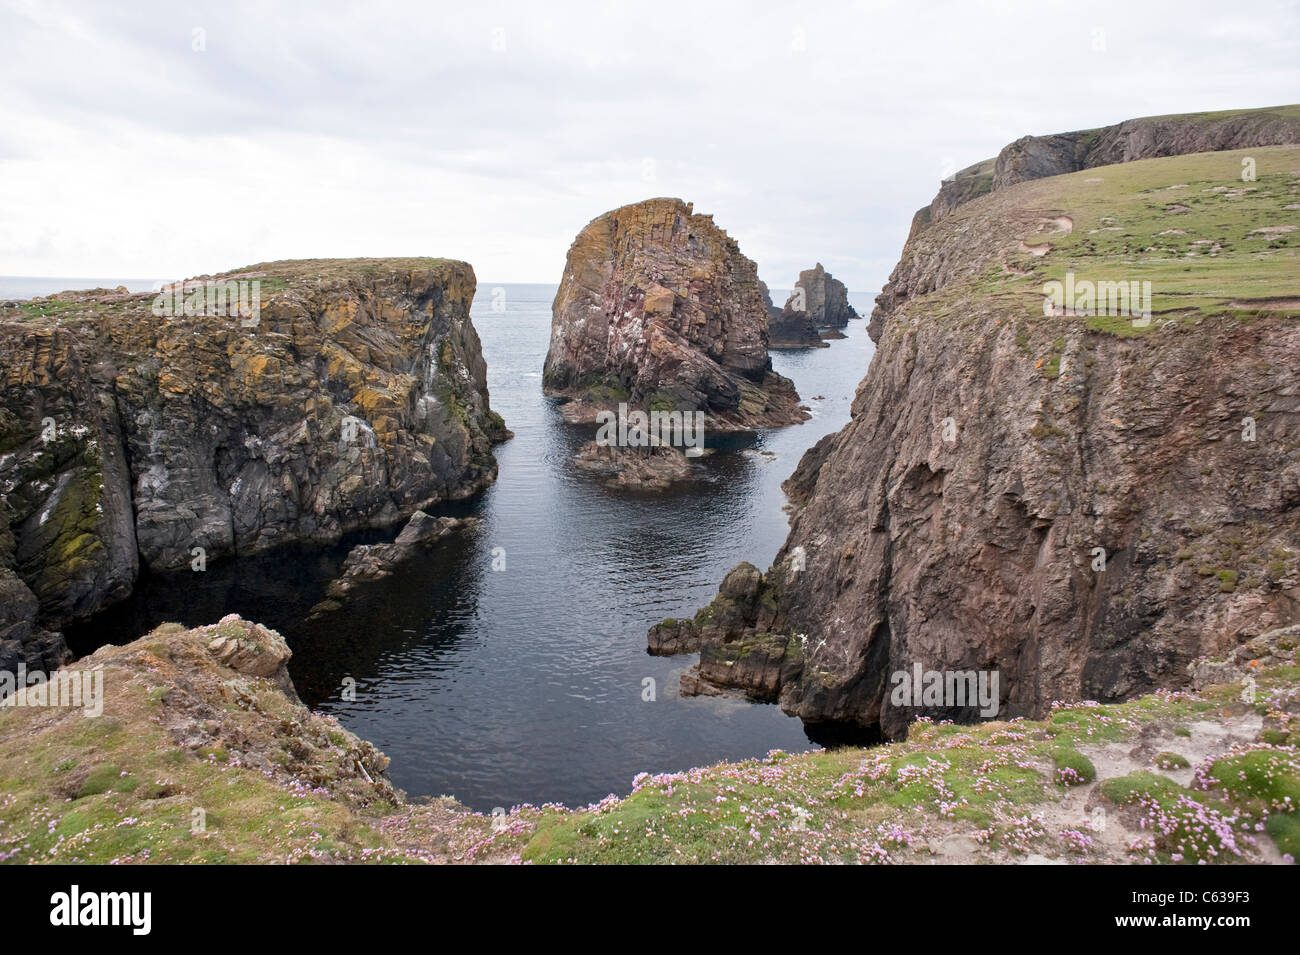 Fair Isle Shetland Archipel subarctique côte Ecosse UK Europe Juin Banque D'Images